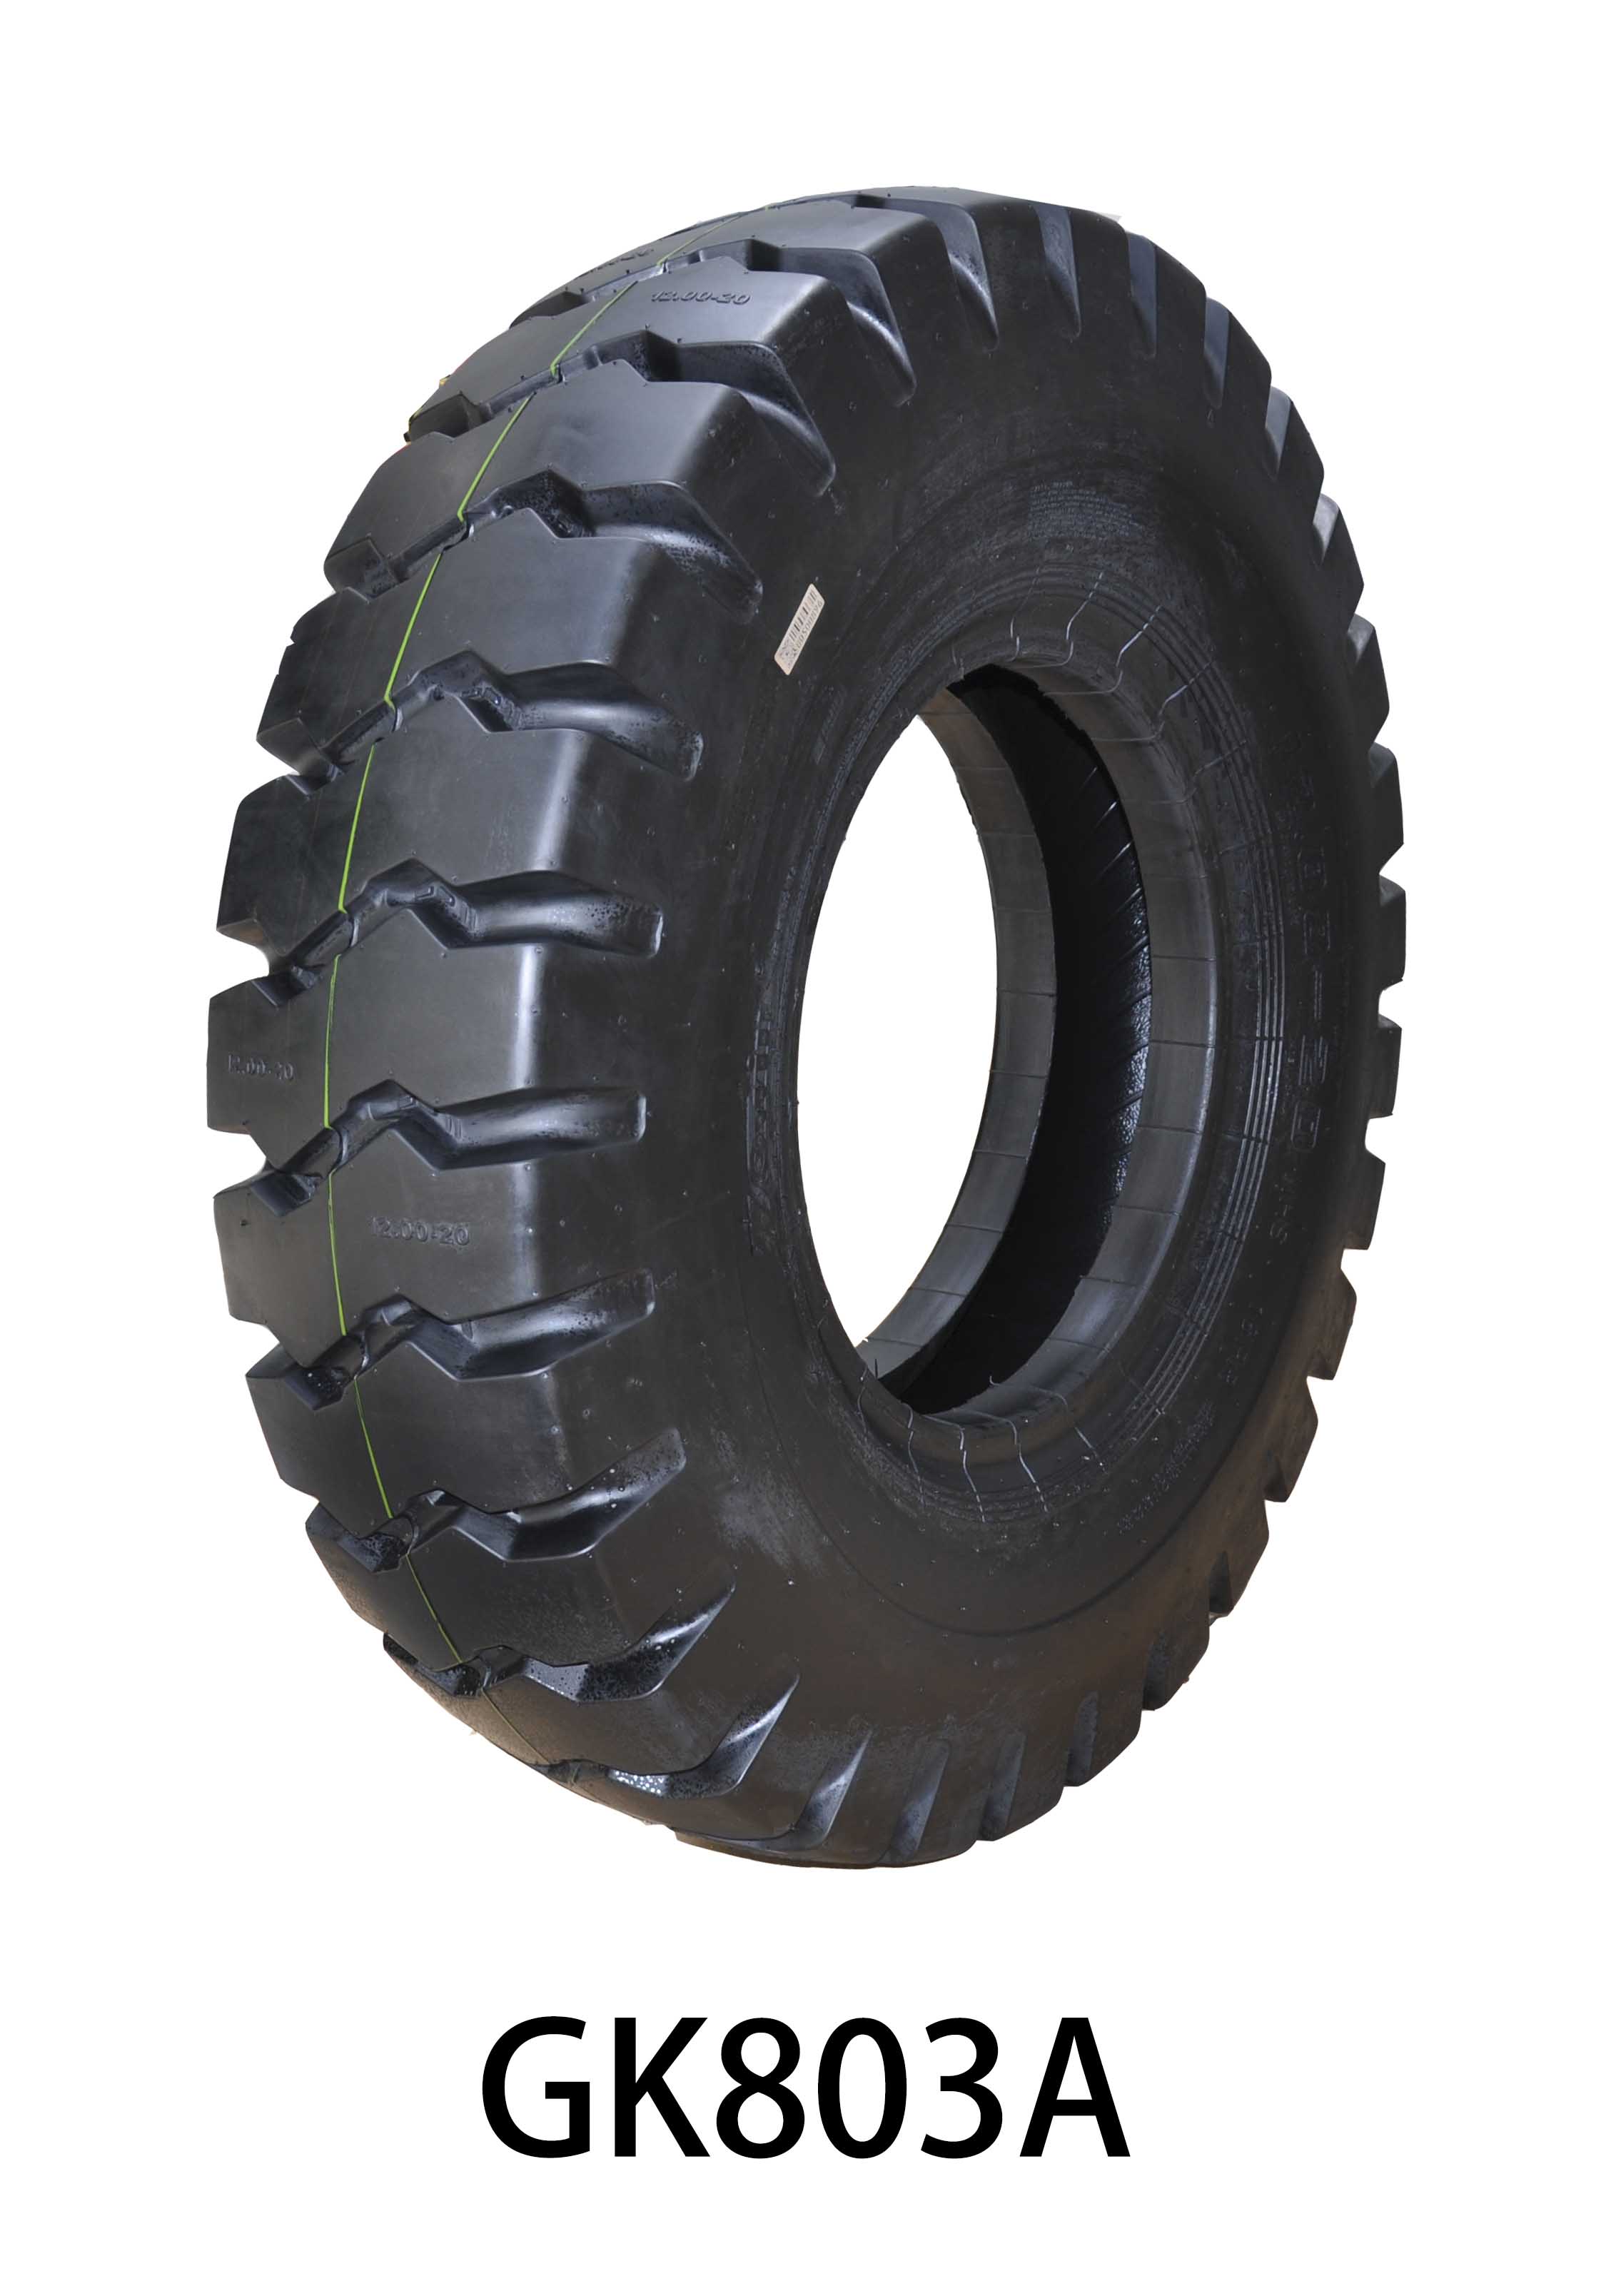 公司矿用载重轮胎新品GK803A系列上市